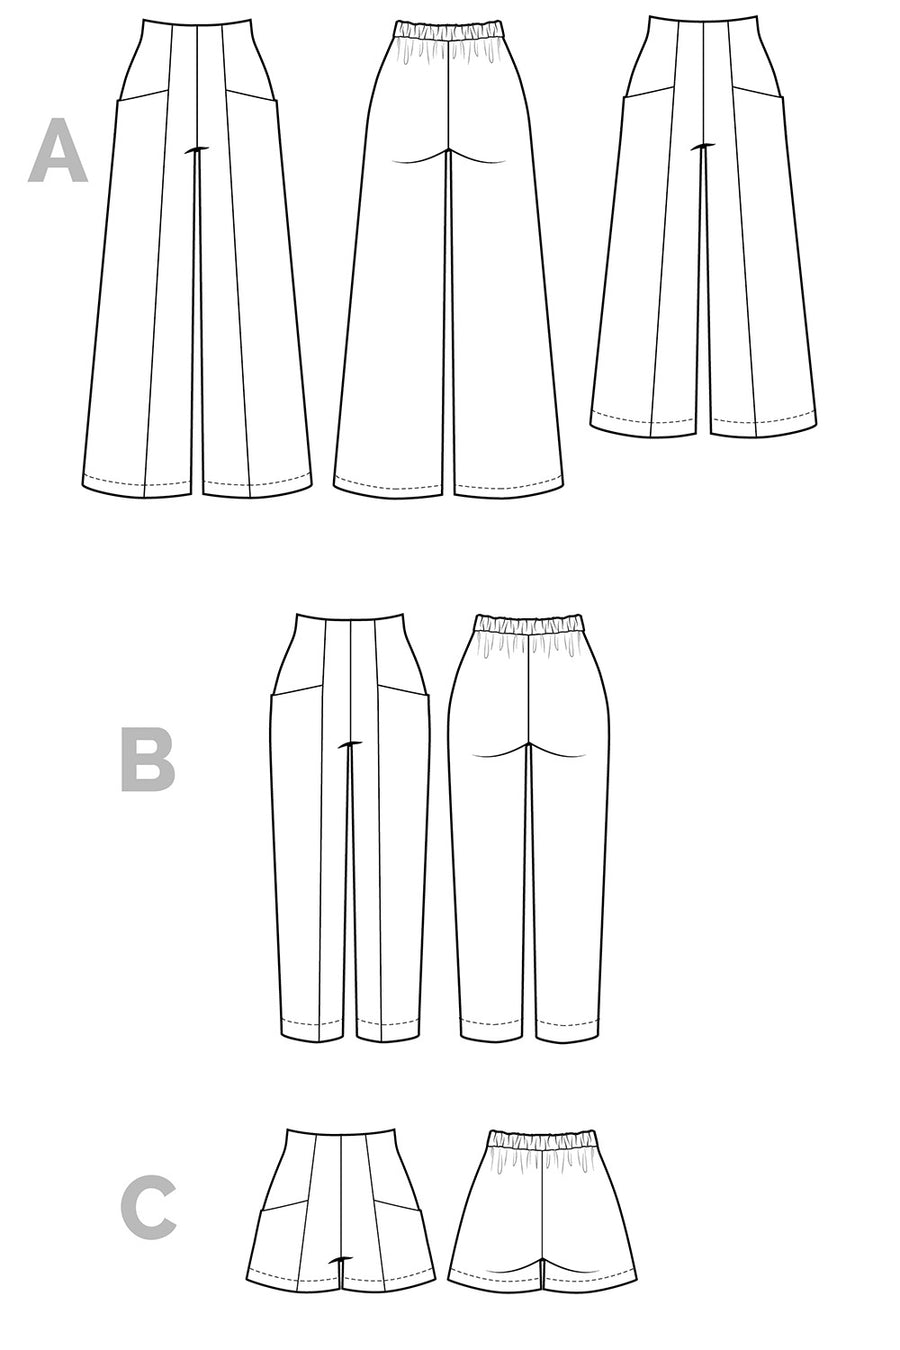 Pietra Pants + Shorts Pattern